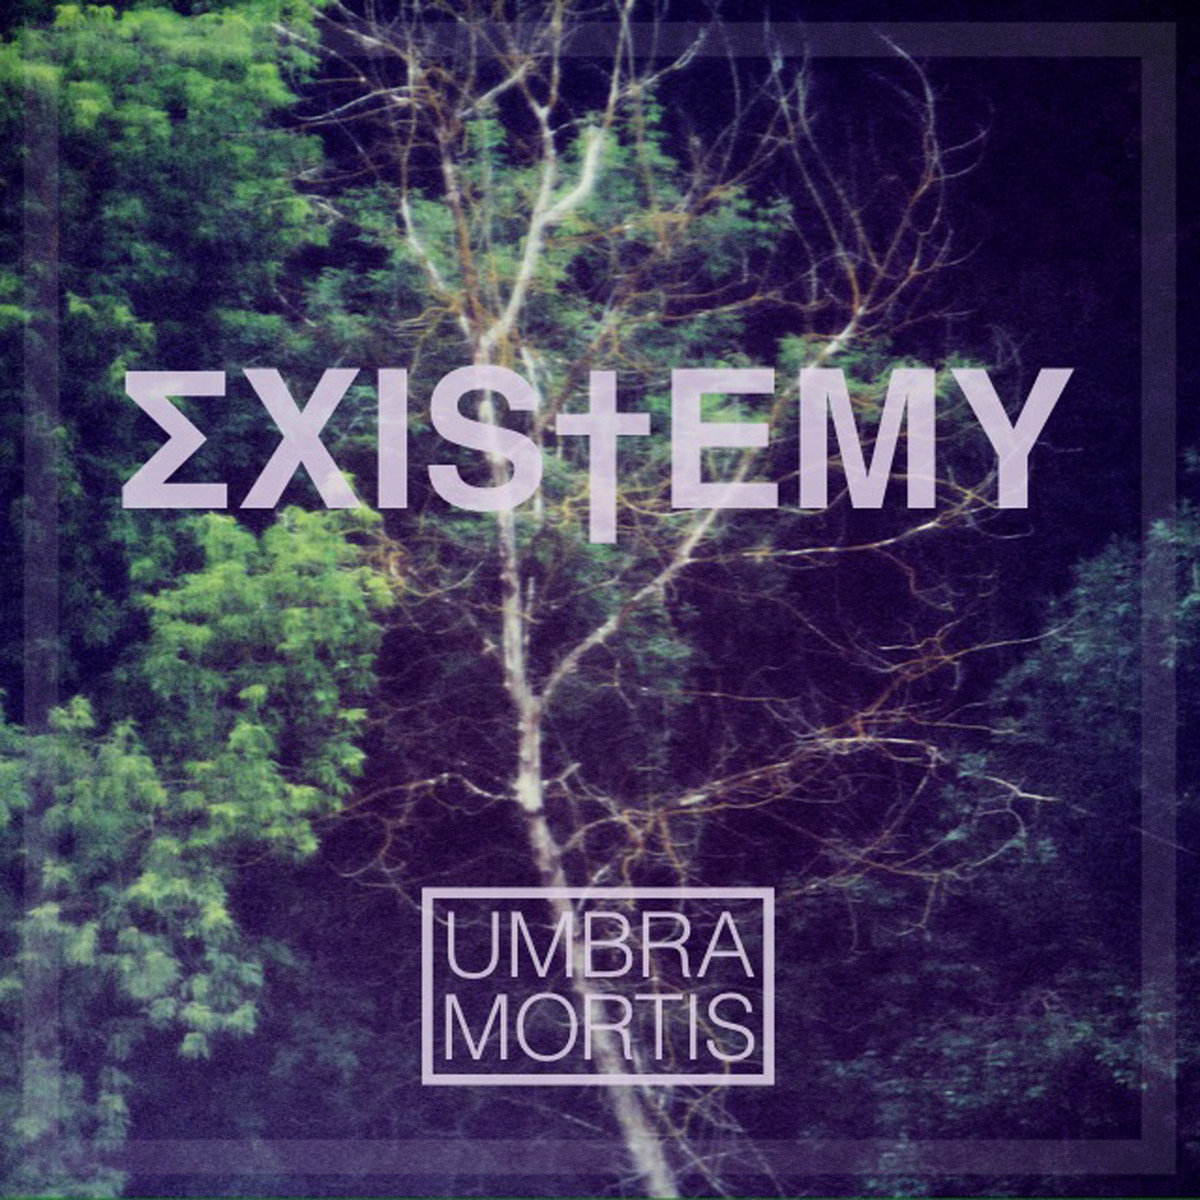 ΣXIS†EMY - UMBRA MORTIS